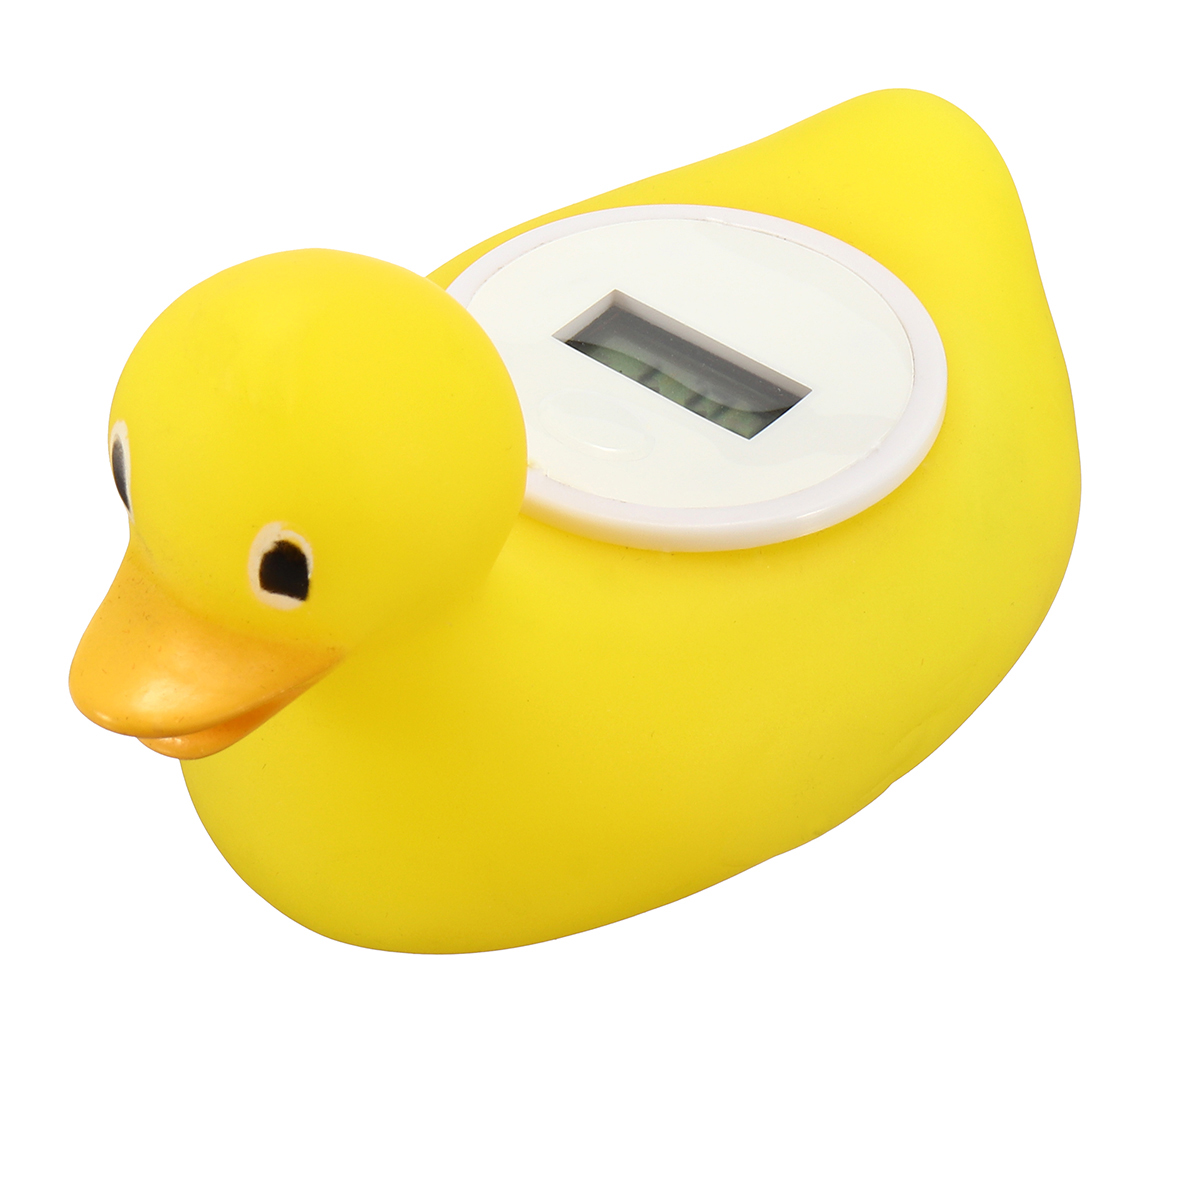 Digital bebe bain thermometre capteur deau de securite canard jouet flottant salle de bain amusant